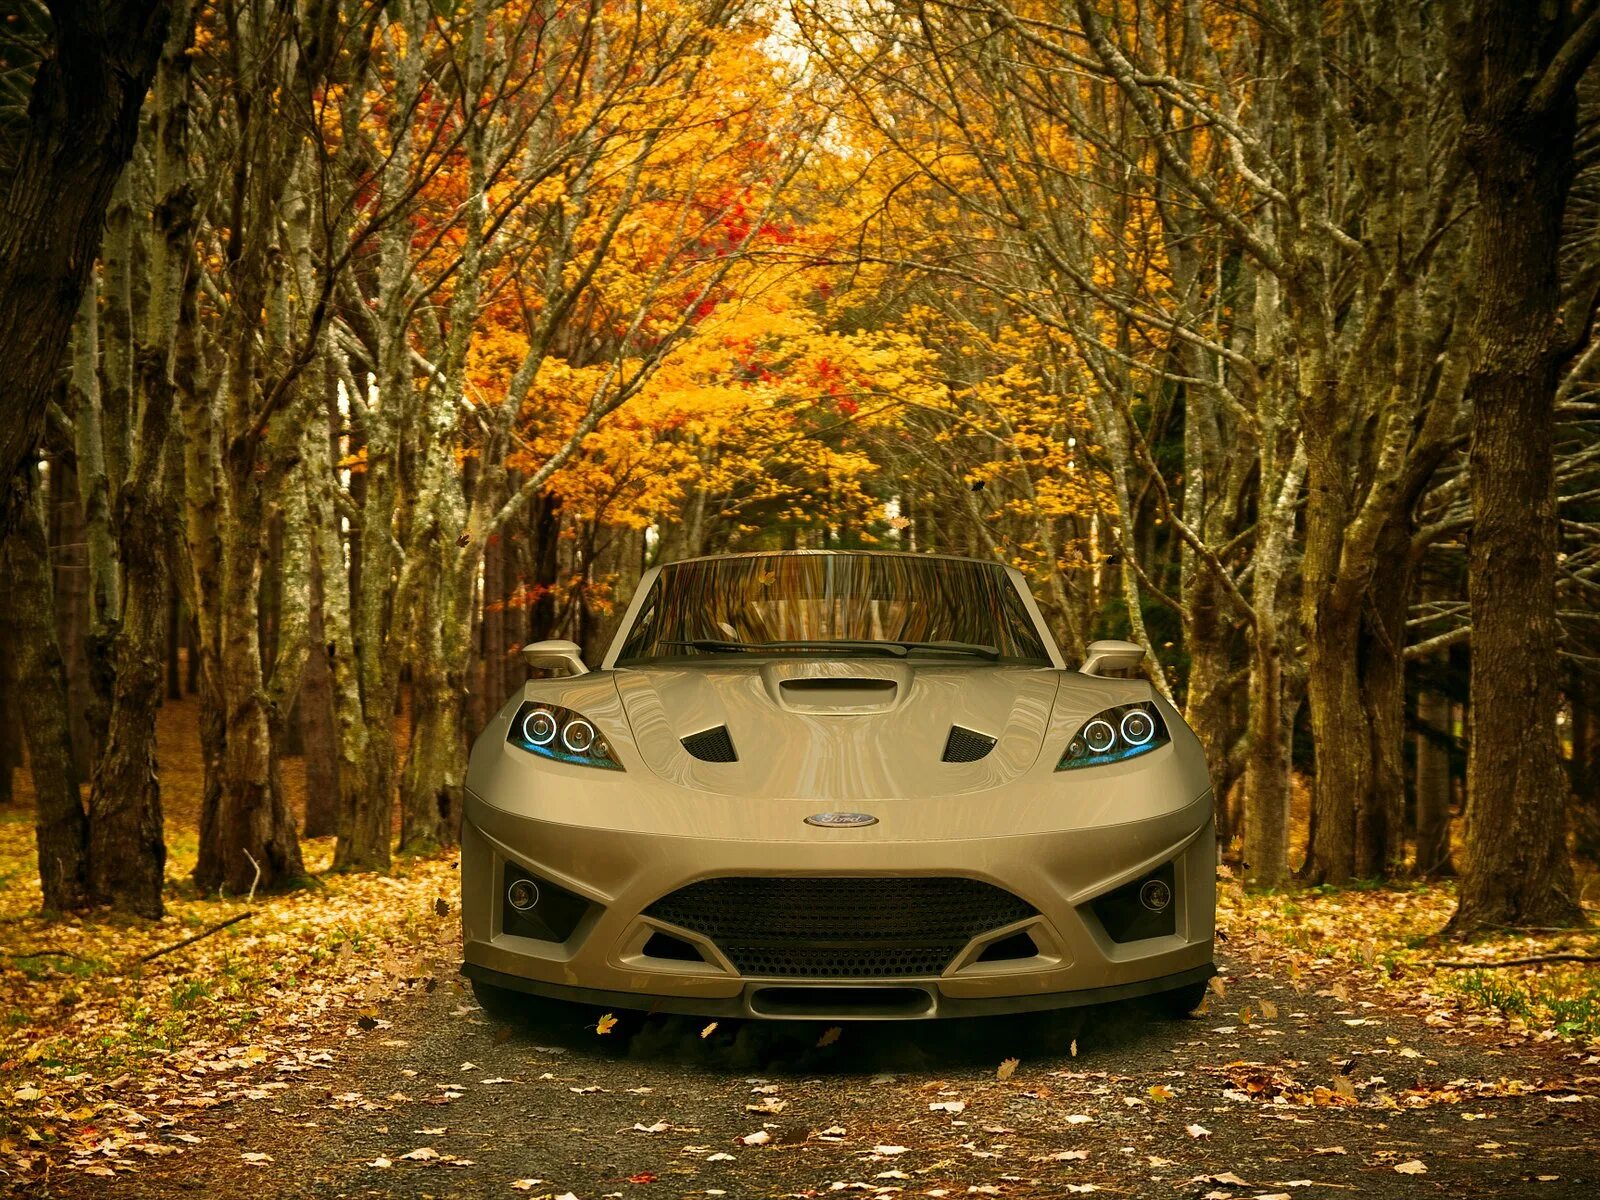 Капот в лесу. Машина в лесу. Машина в осеннем лесу. Автомобиль на природе. Обои машины.